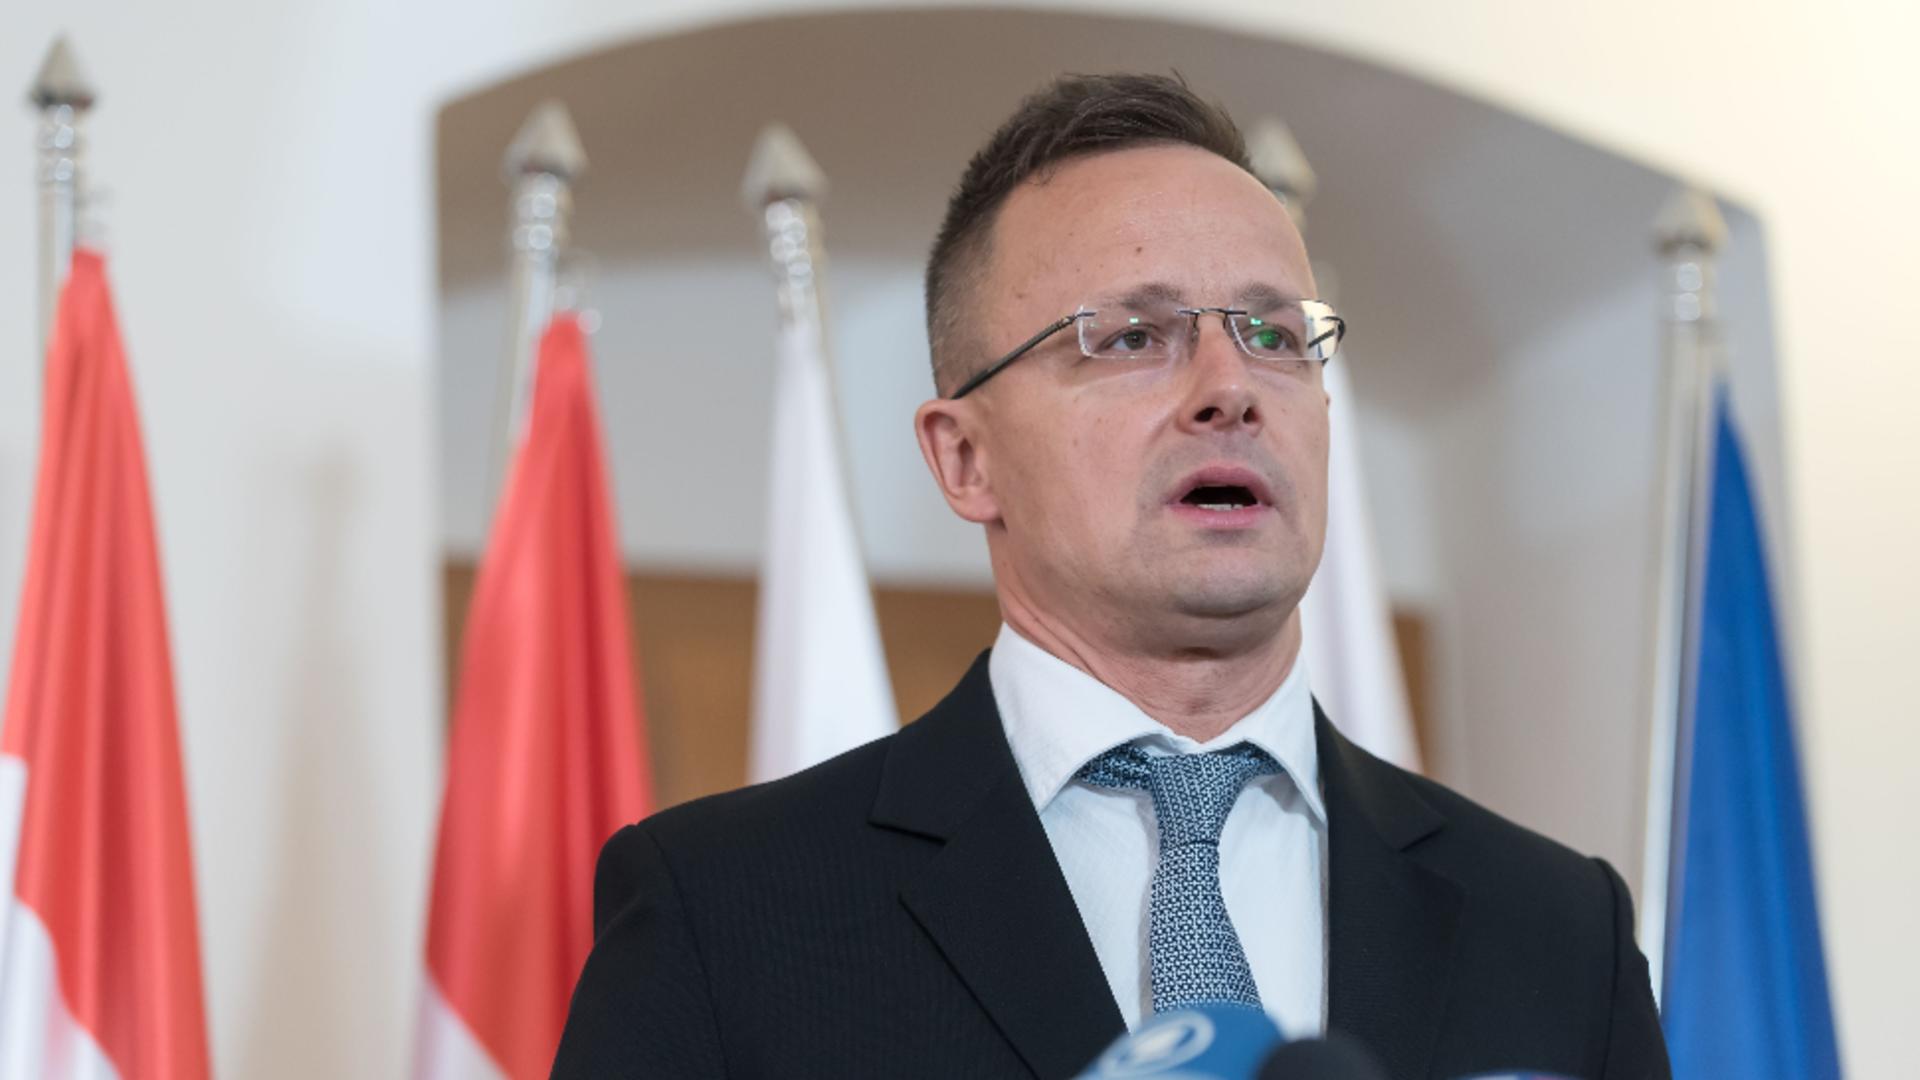 Șeful diplomației ungare, Peter Szijjarto / Foto: Profi Media